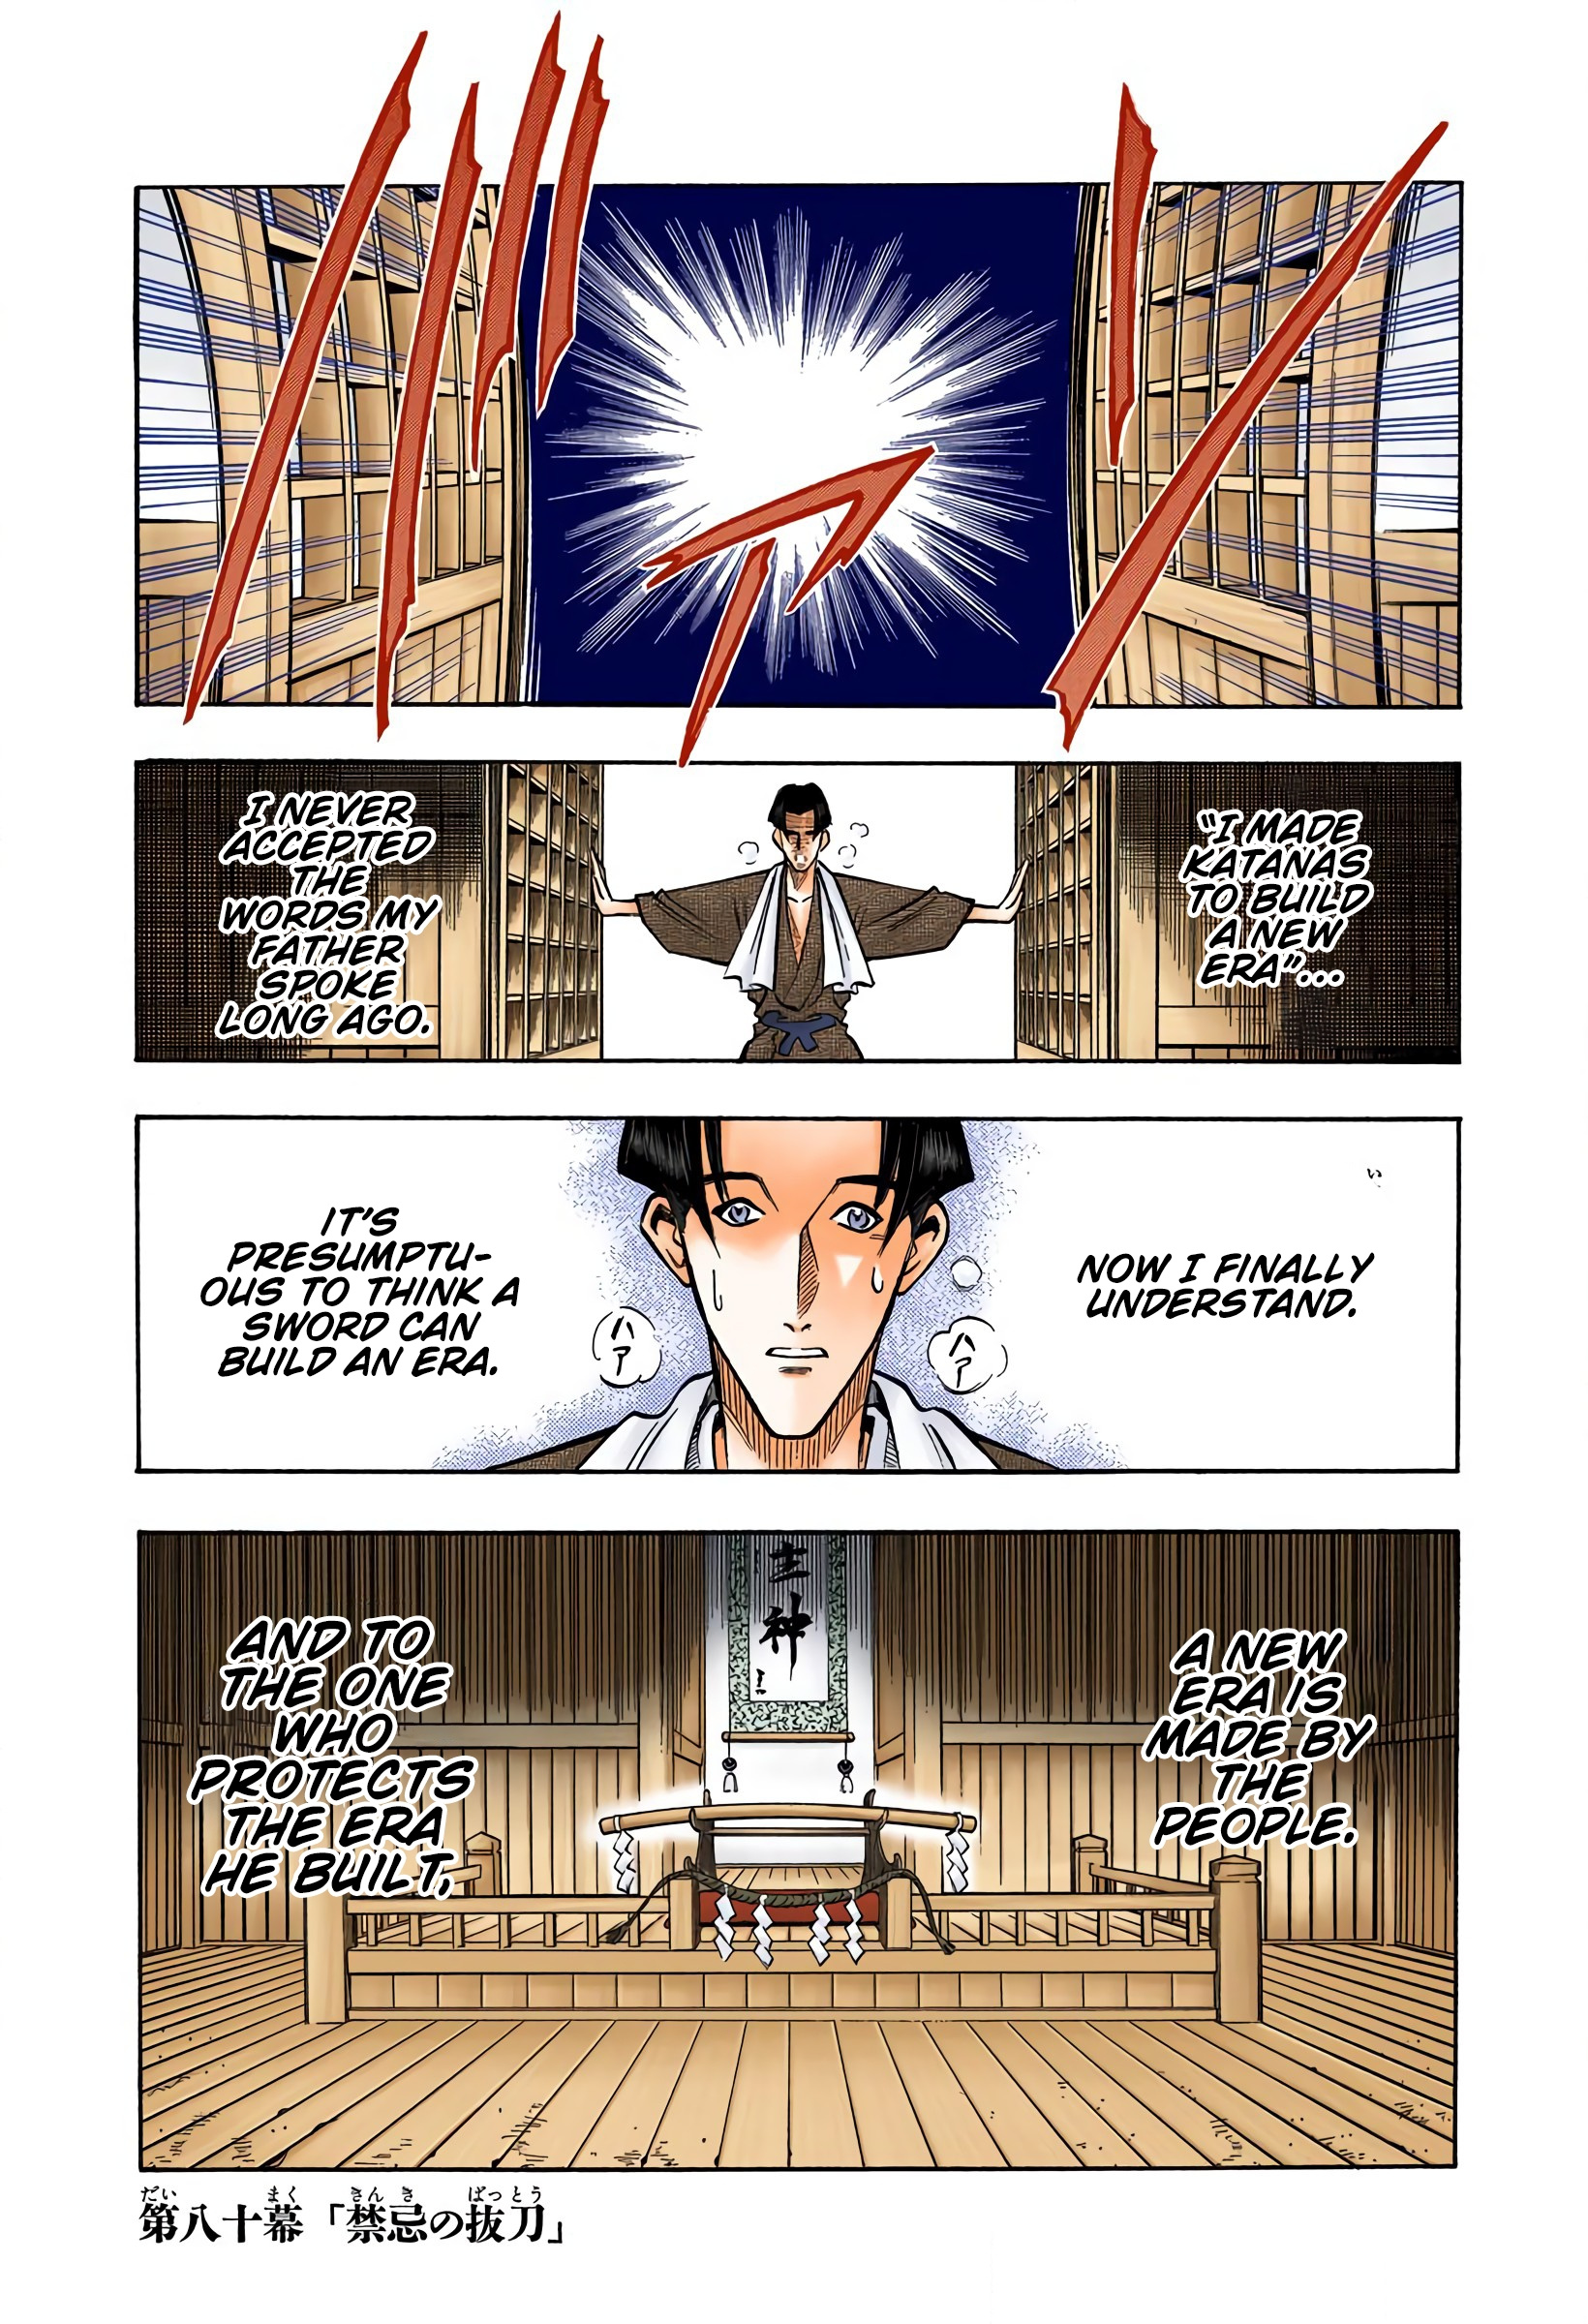 Rurouni Kenshin: Meiji Kenkaku Romantan - Digital Colored Comics Vol.10 Chapter 80